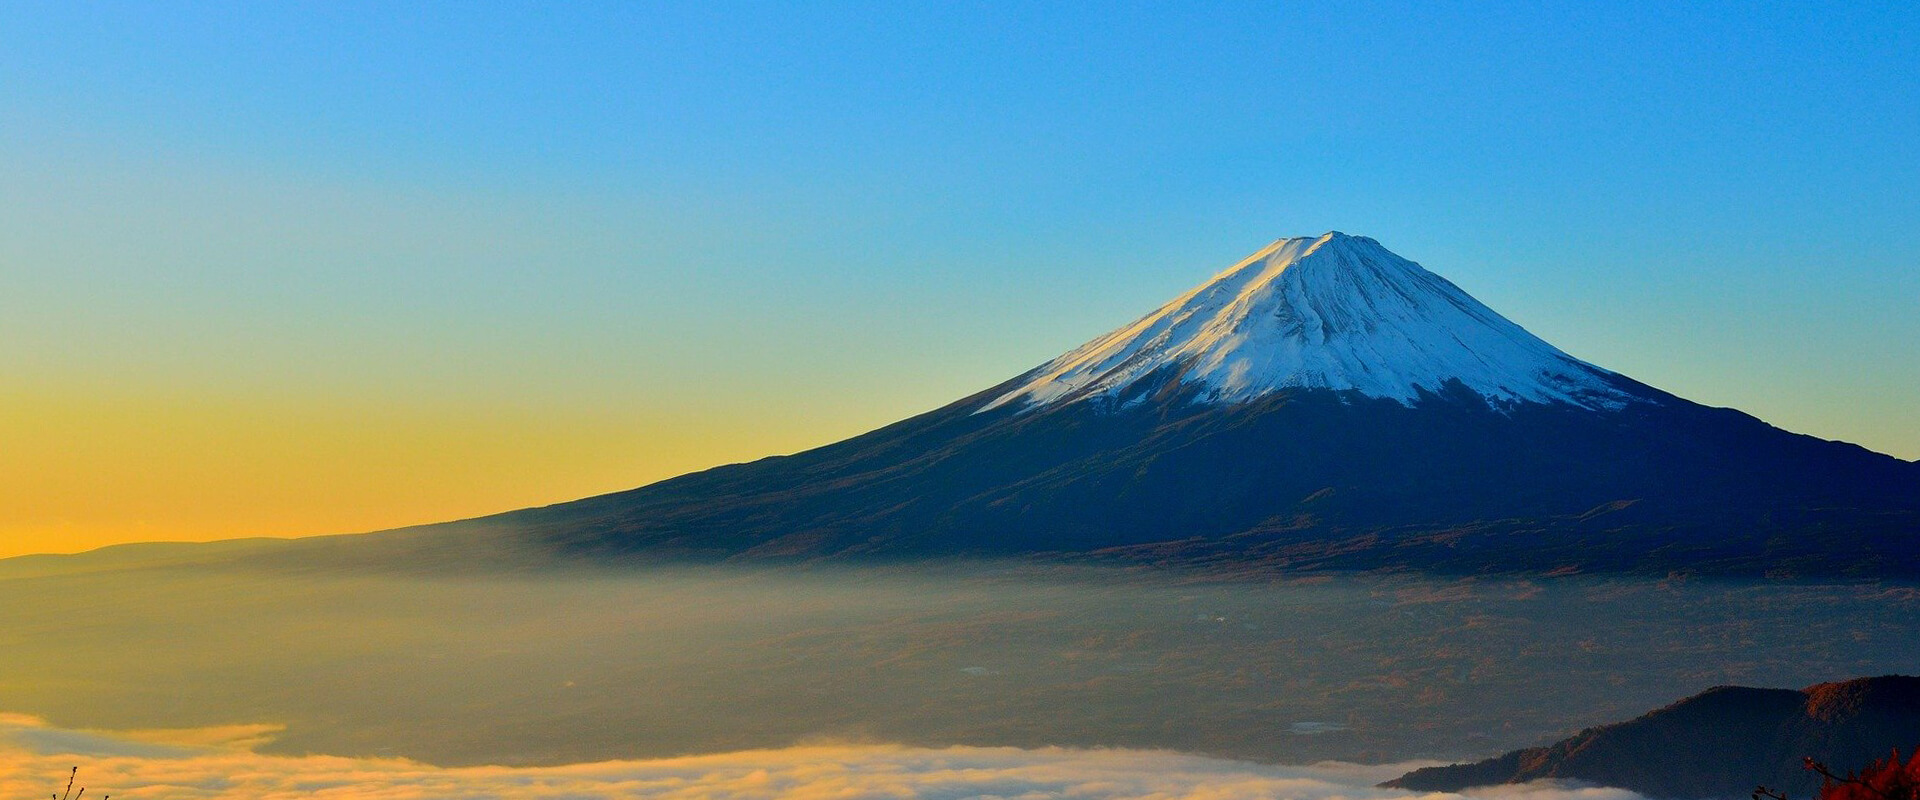 朝焼けに輝く、日本の富士山